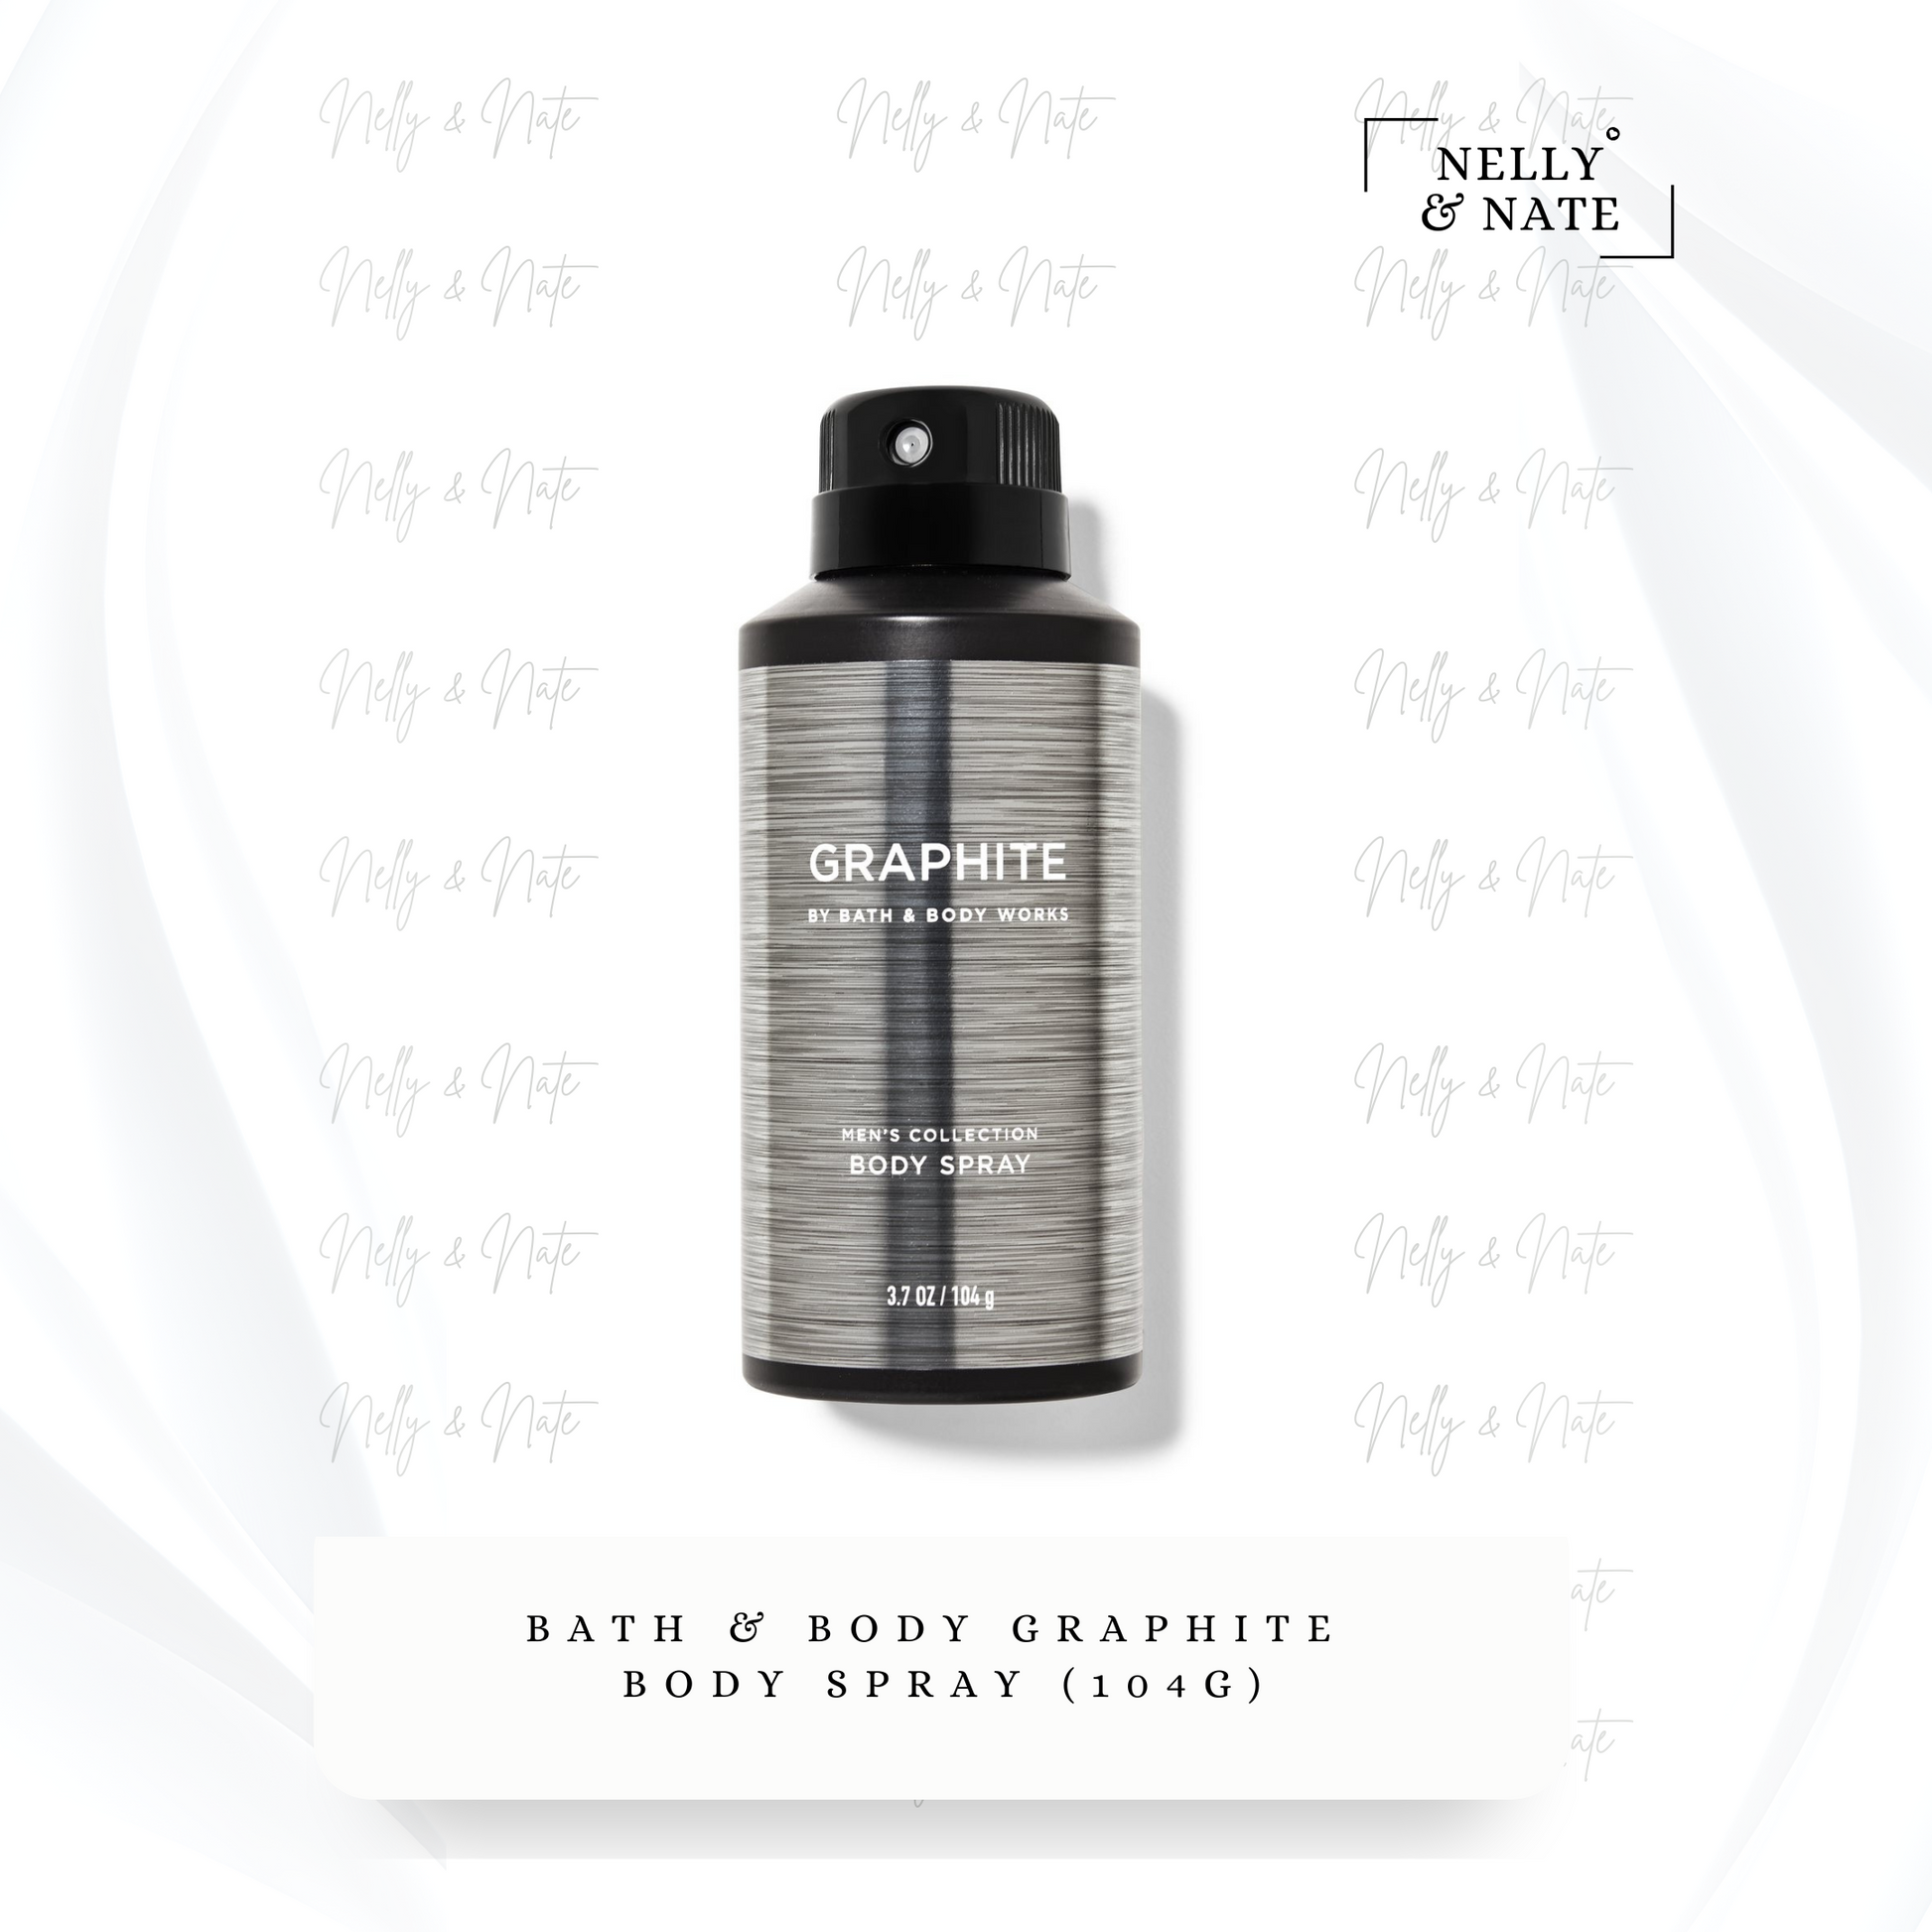 Bath & Body Graphite Body Spray (104g) – Nelly and Nate